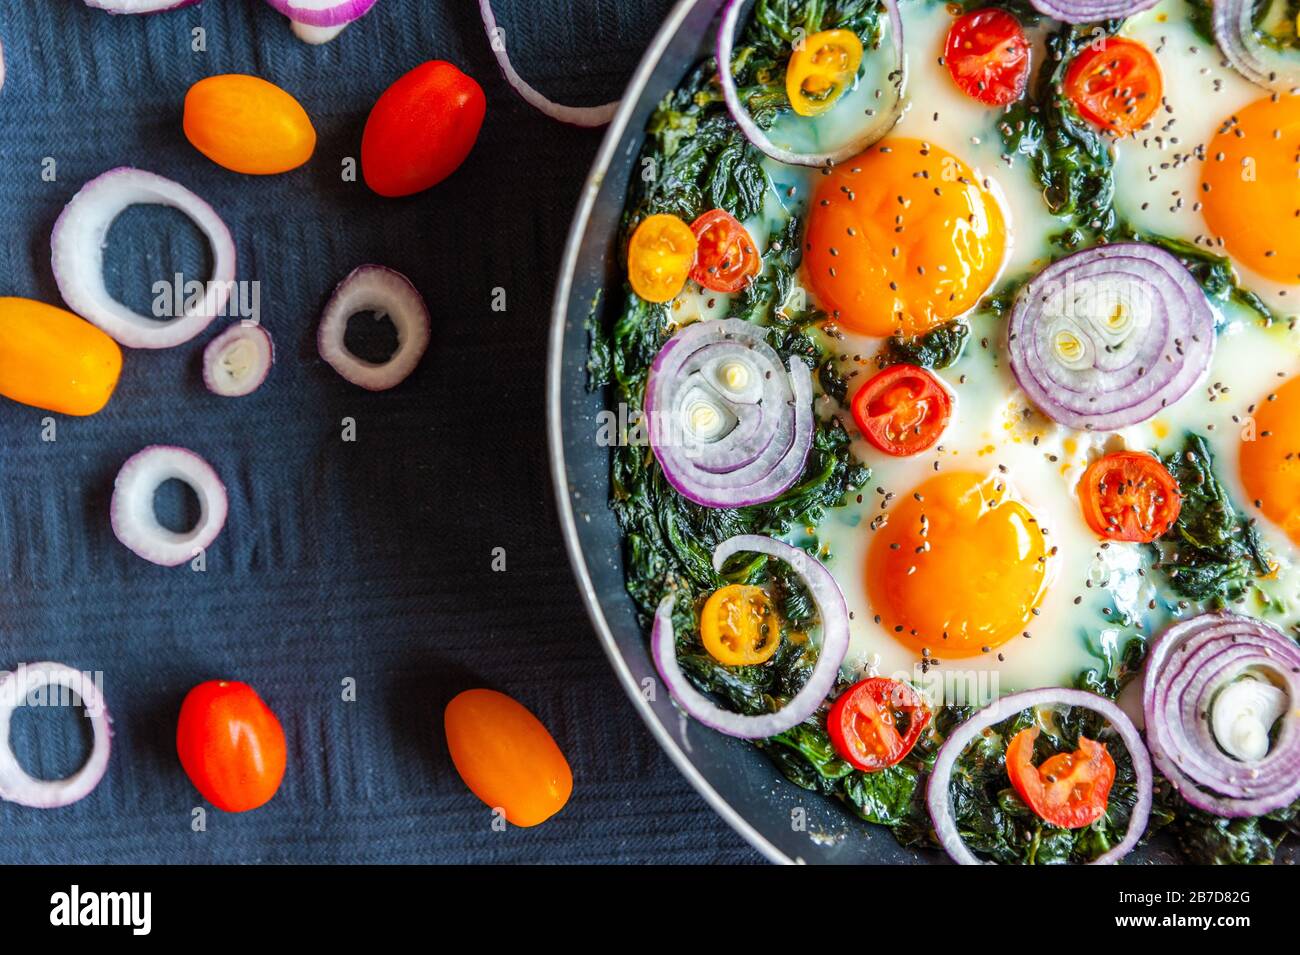 Gros plan d'une omelette aux épinards dans une poêle et décoré d'oignons frais, de tomates et d'épinards Banque D'Images